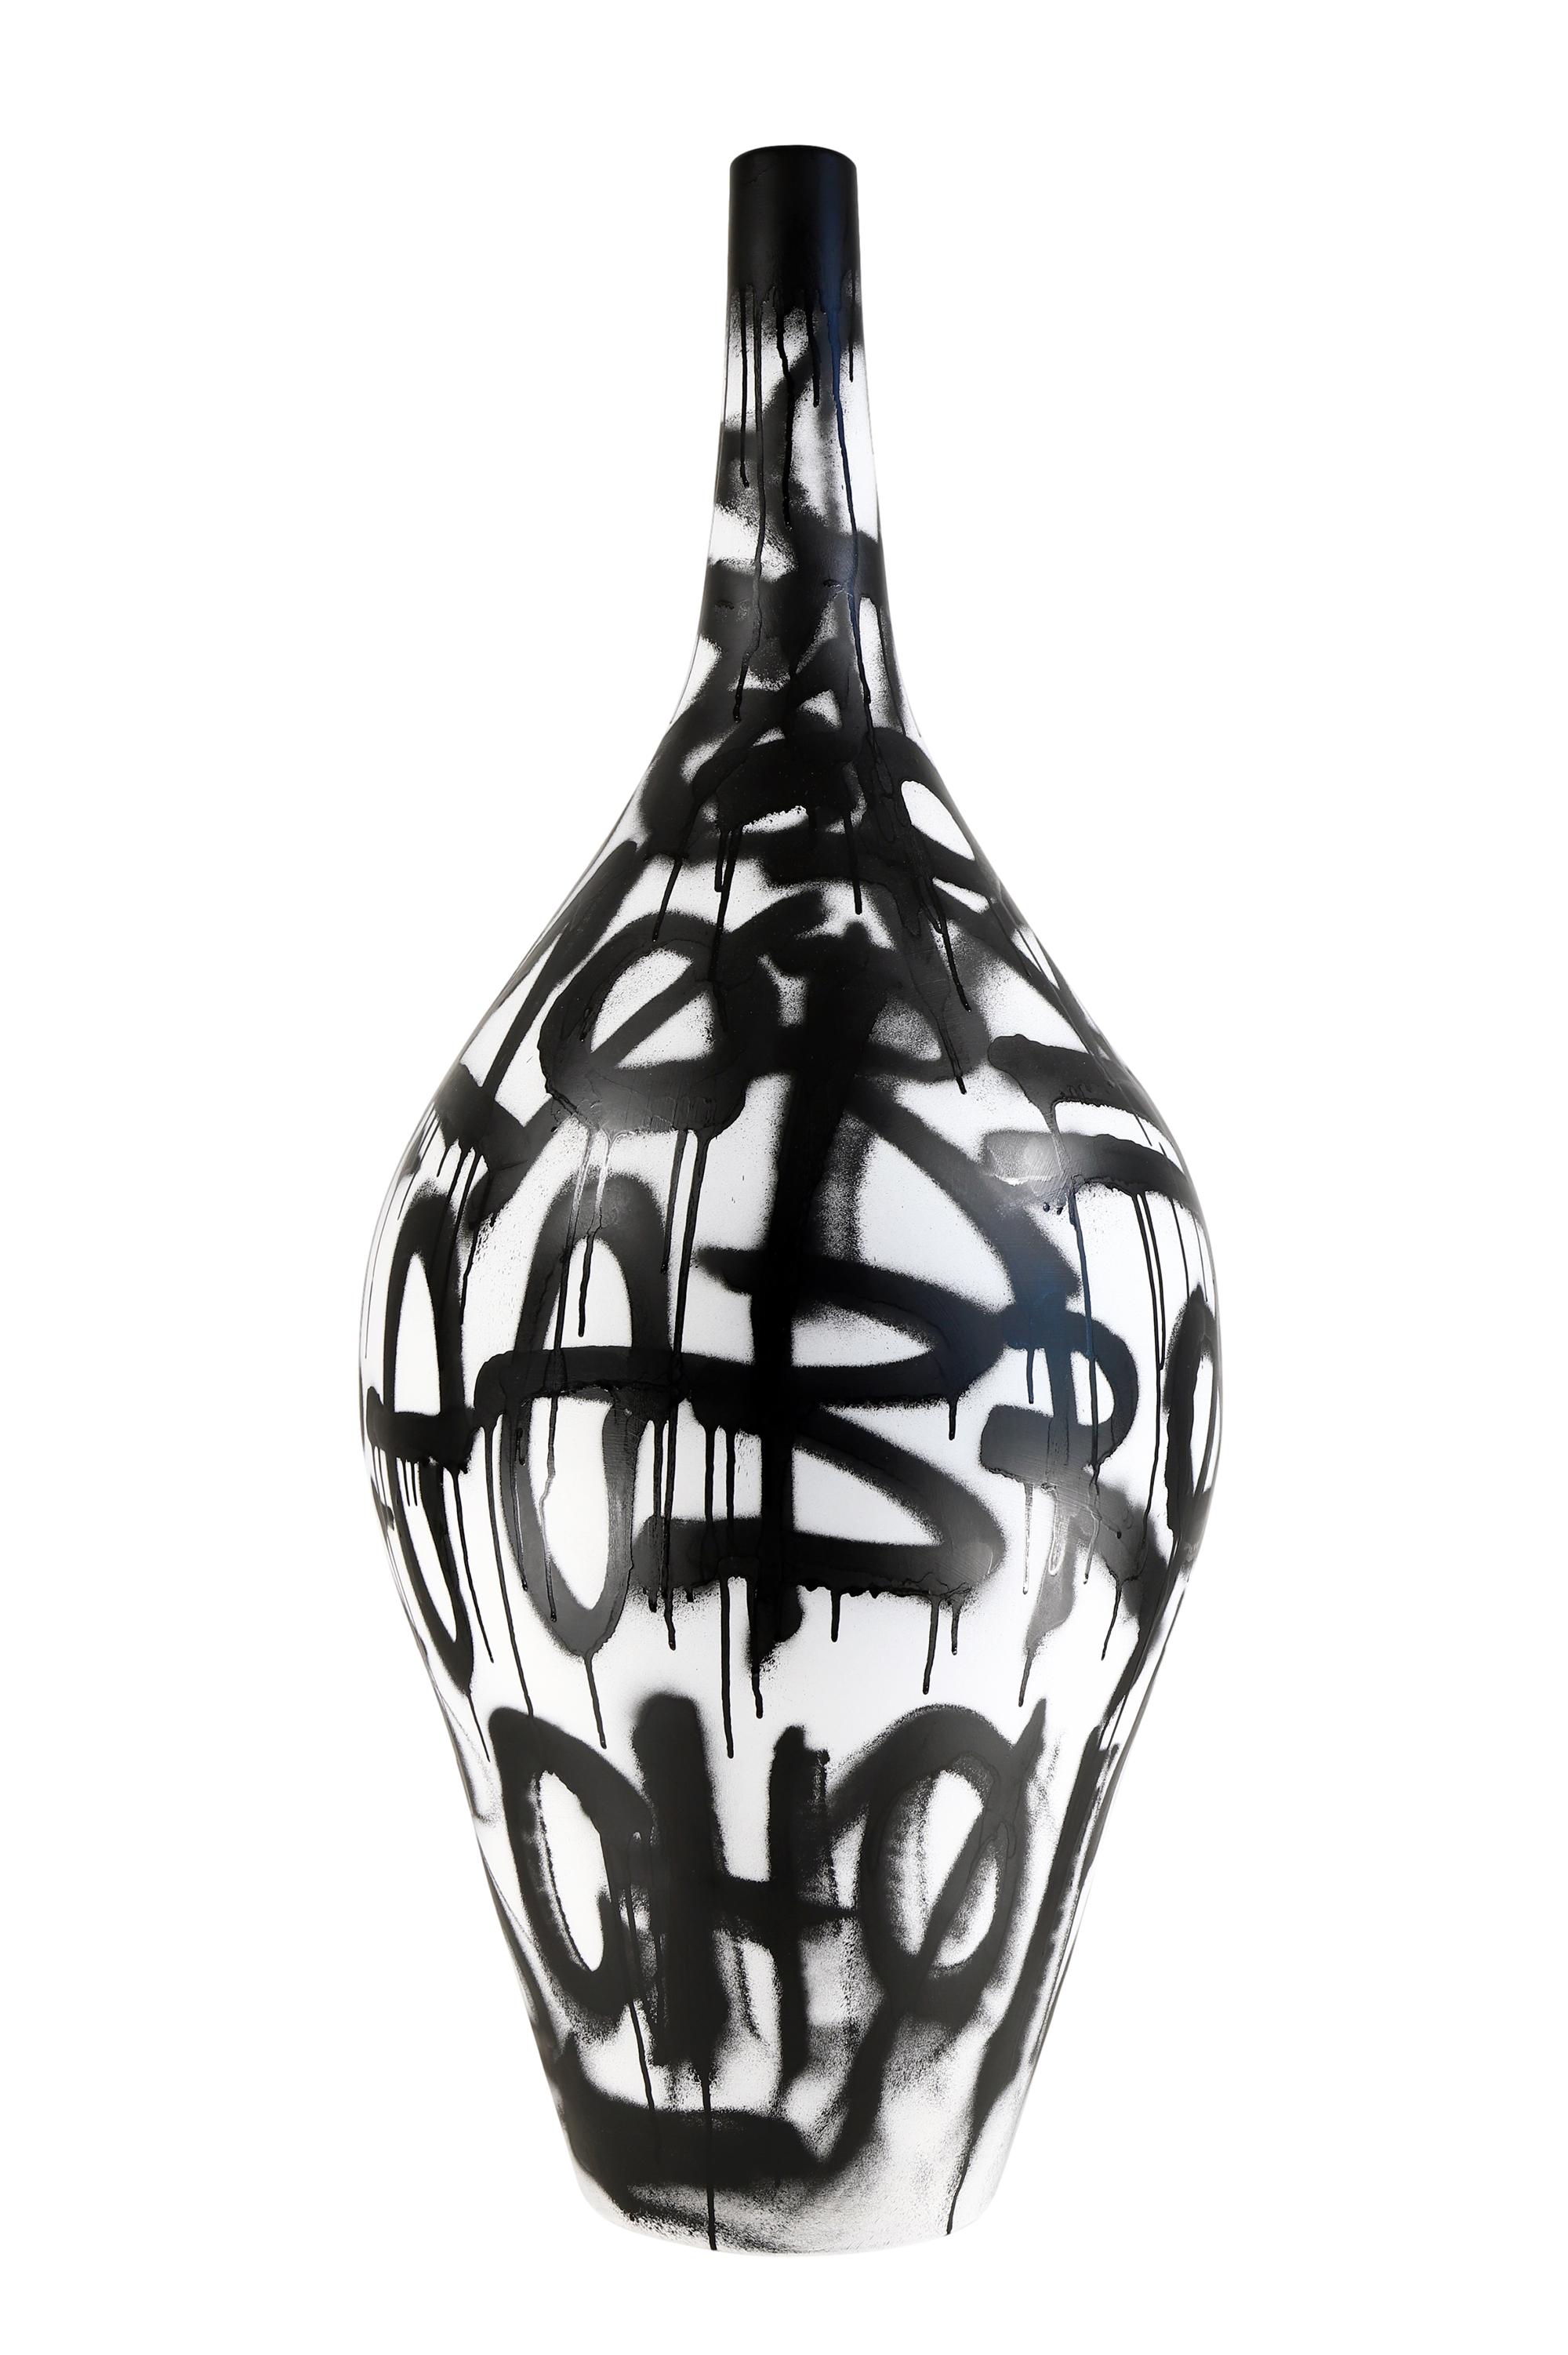 Peinture acrylique et peinture à la bombe sur sculpture en céramique « Allégorie de la beauté intemporelle » - Contemporain Sculpture par Grégoire Devin